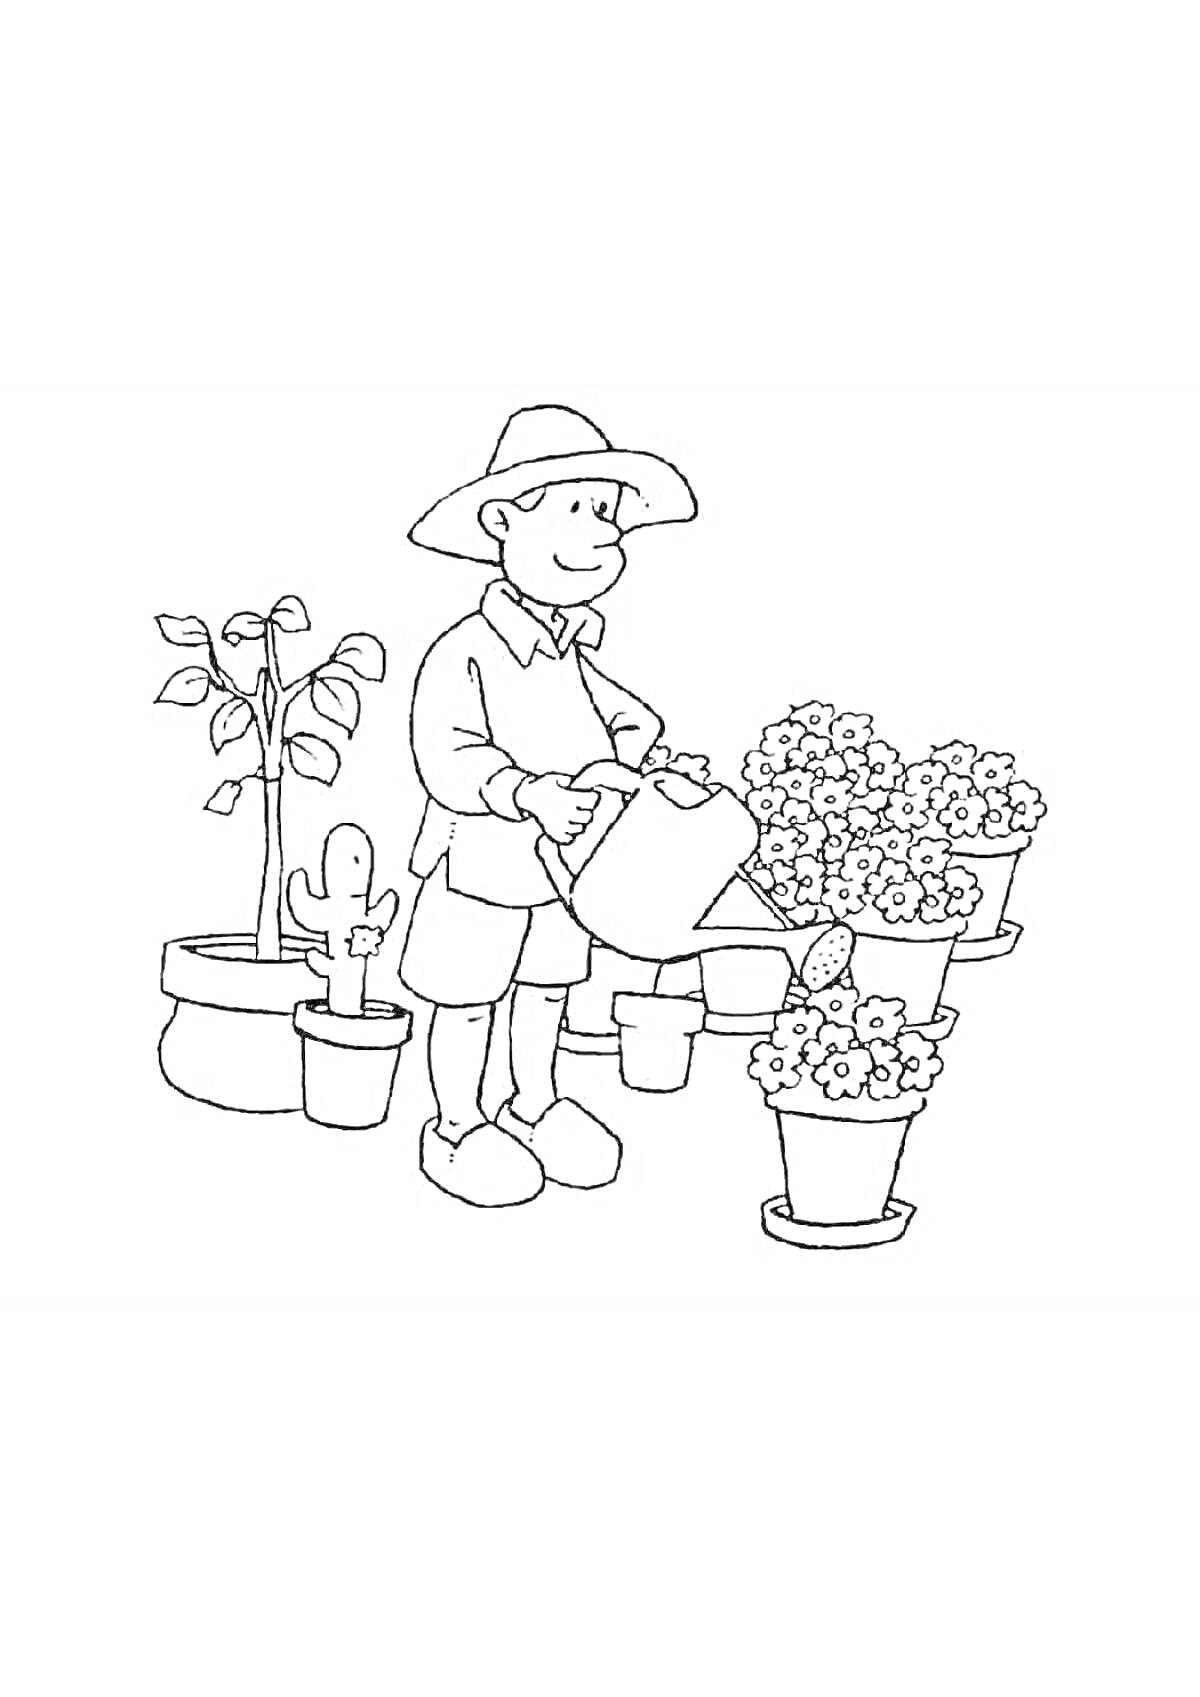 Раскраска Садовник поливает растения из лейки, вокруг цветы в горшках, куст и кактус